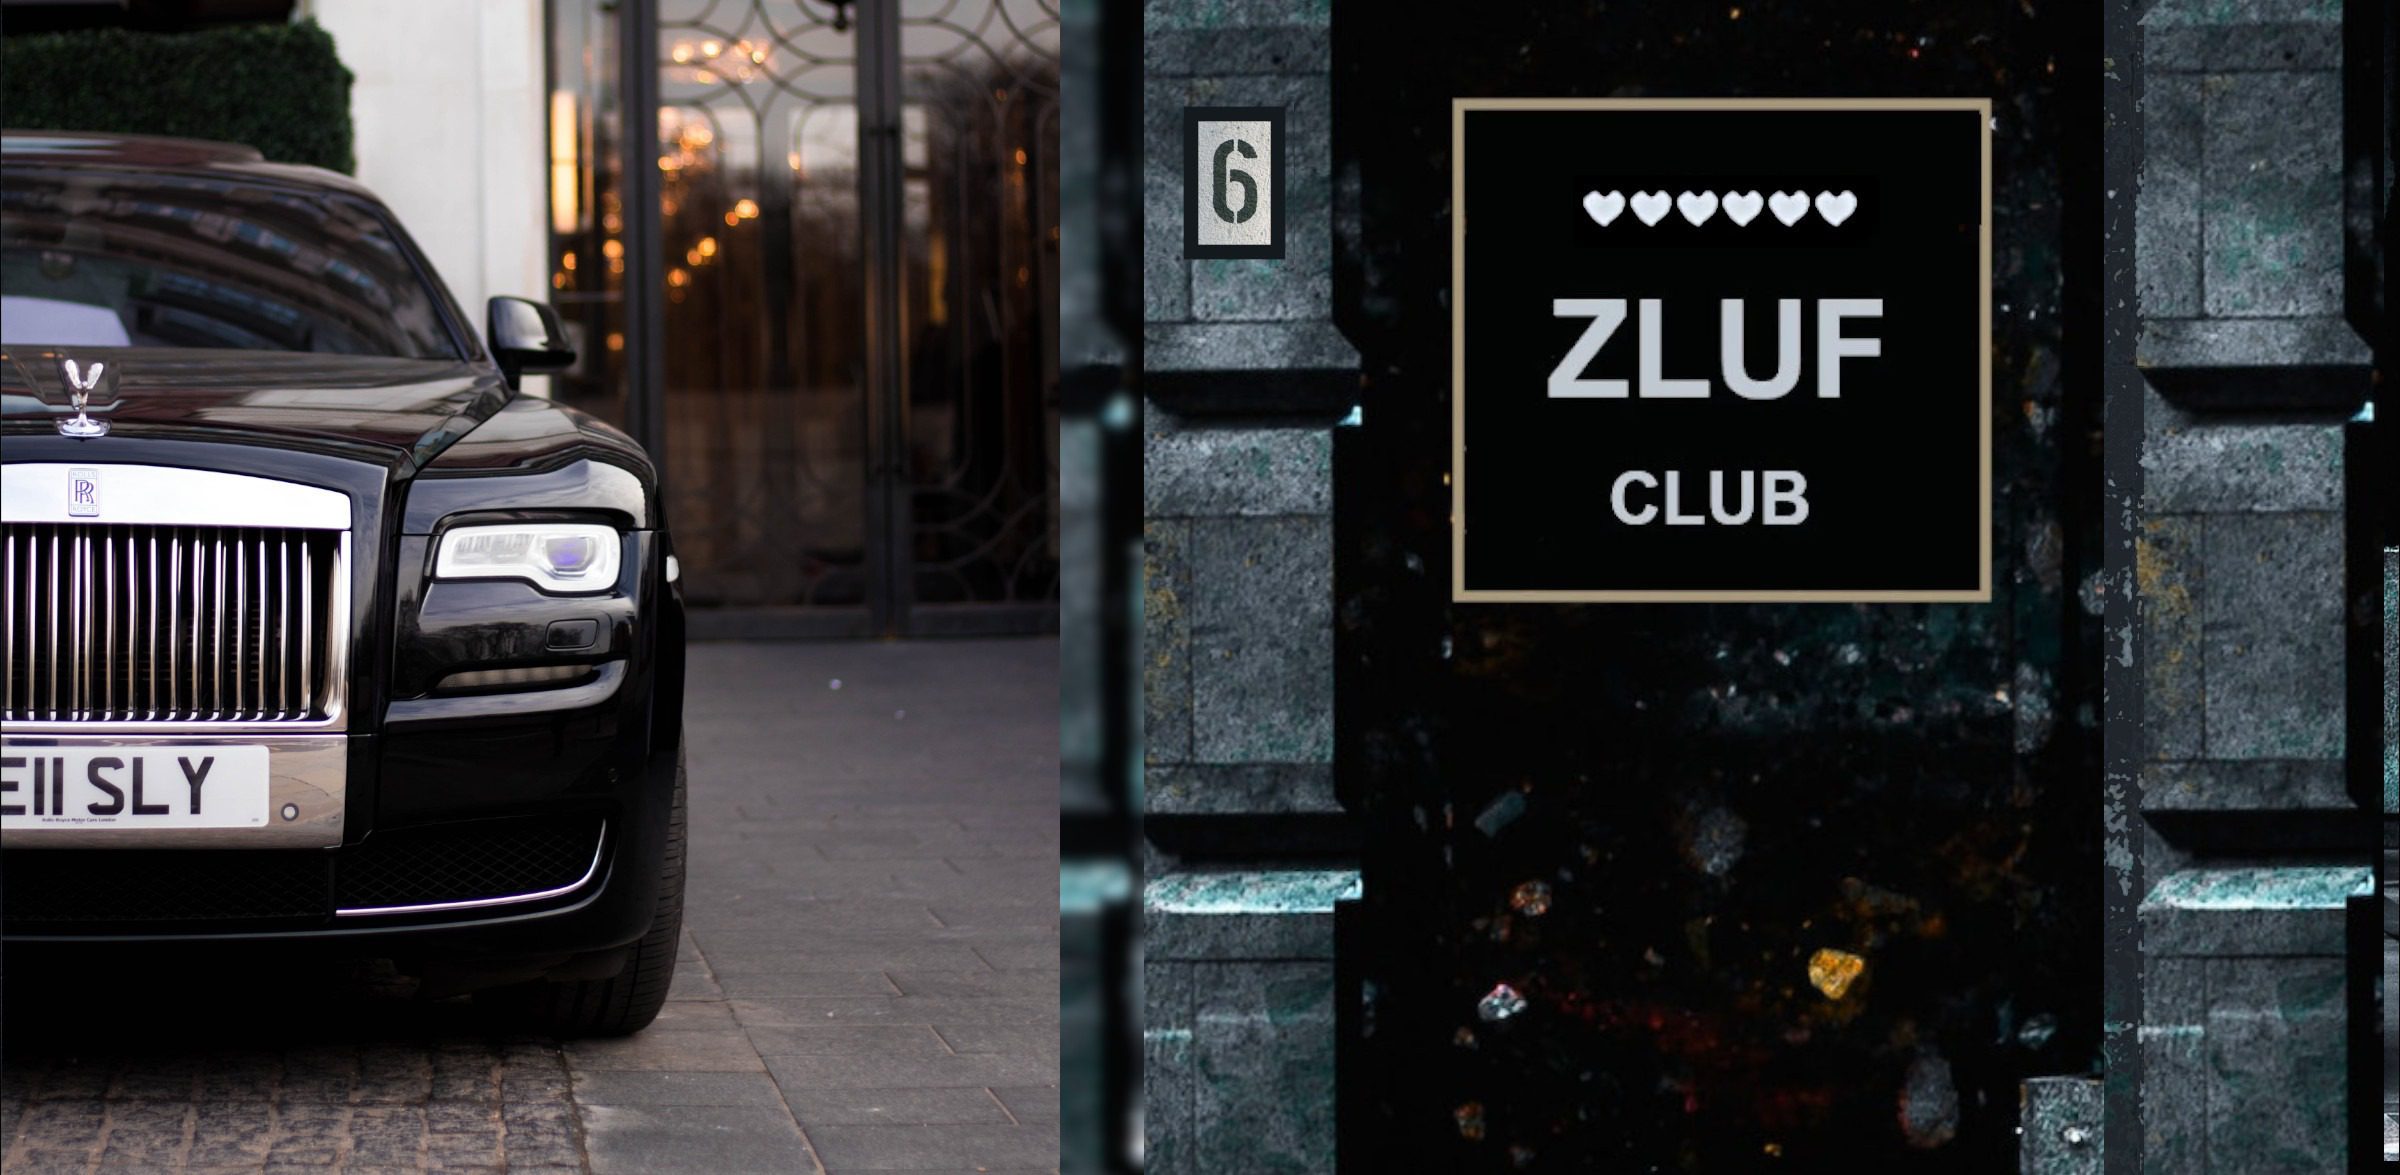 The ZLUF club